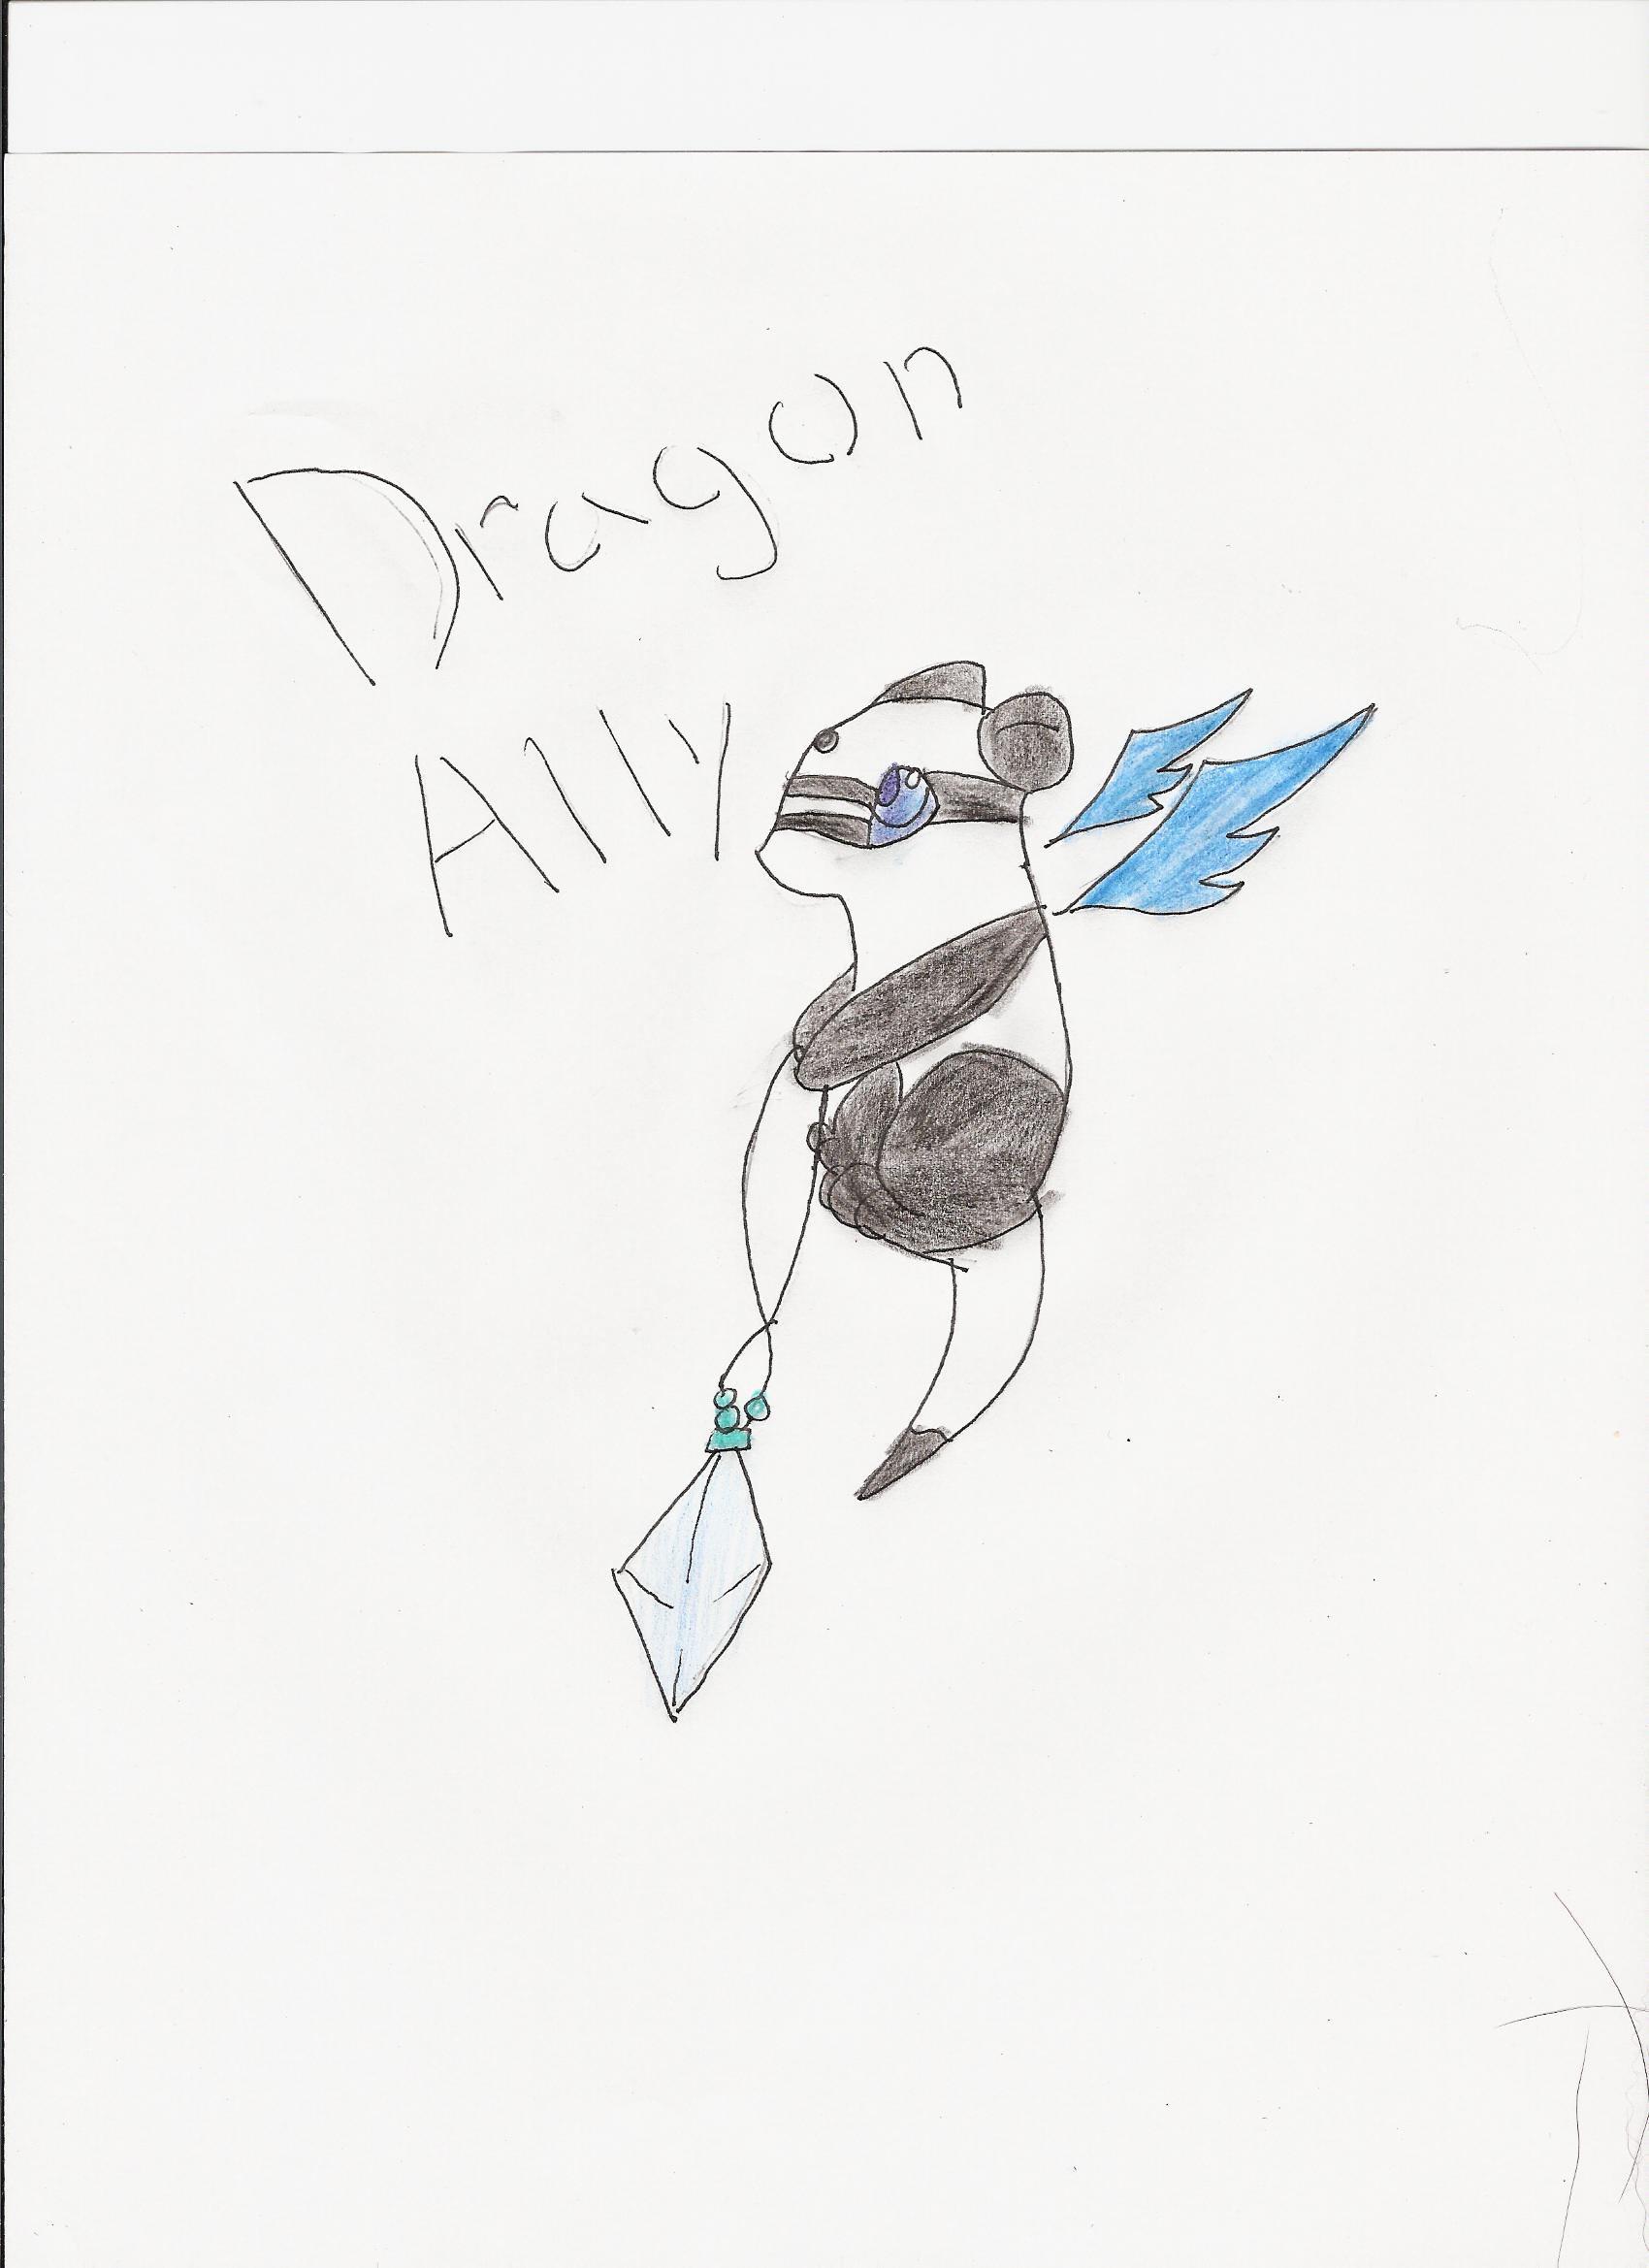 dragon_ally fanart by MidnightChaoz